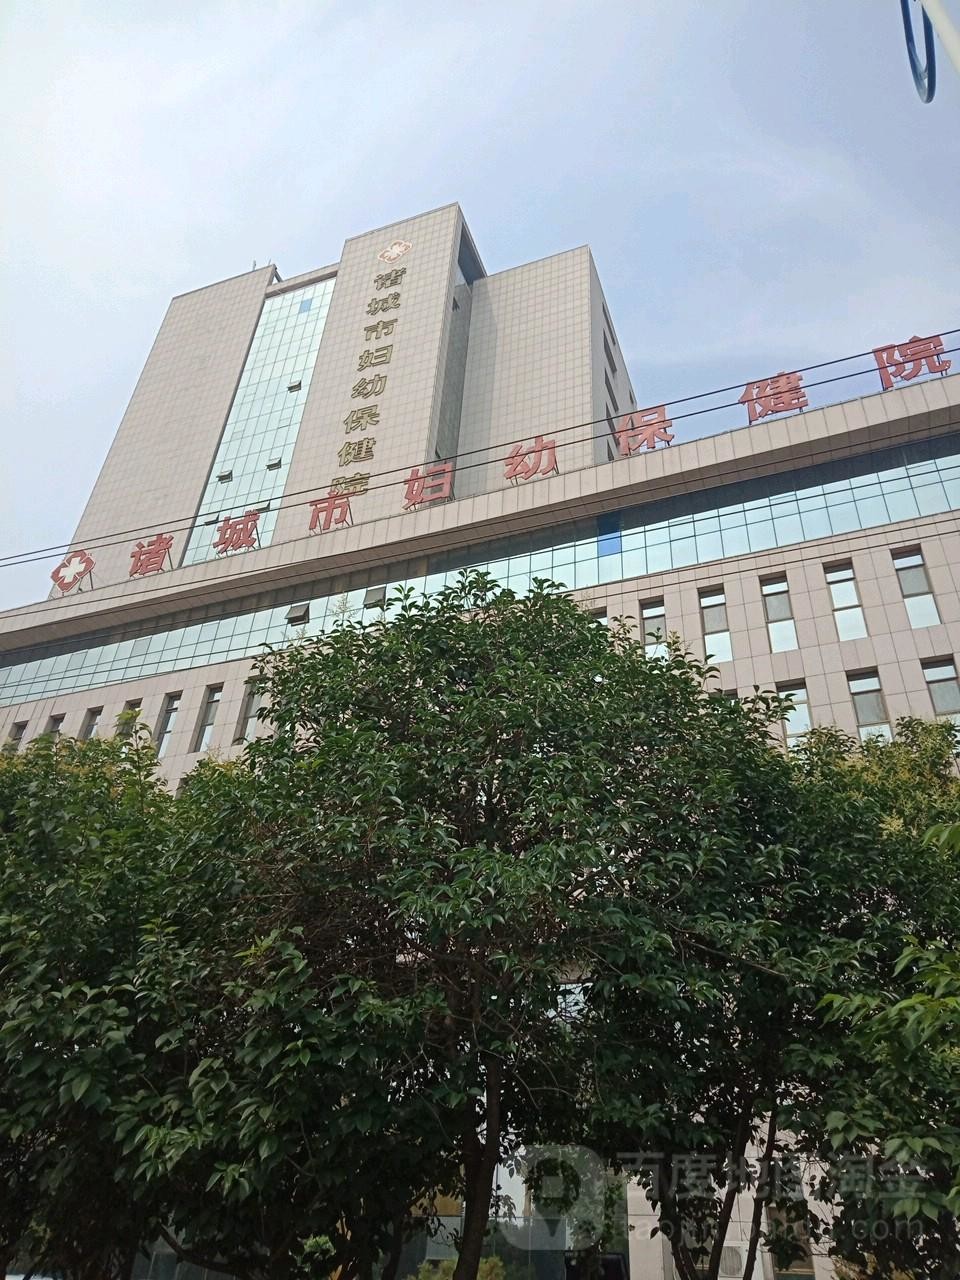 أحدث حالة شركة حول مستشفى صحة الأم والطفل بمدينة تشوتشنغ